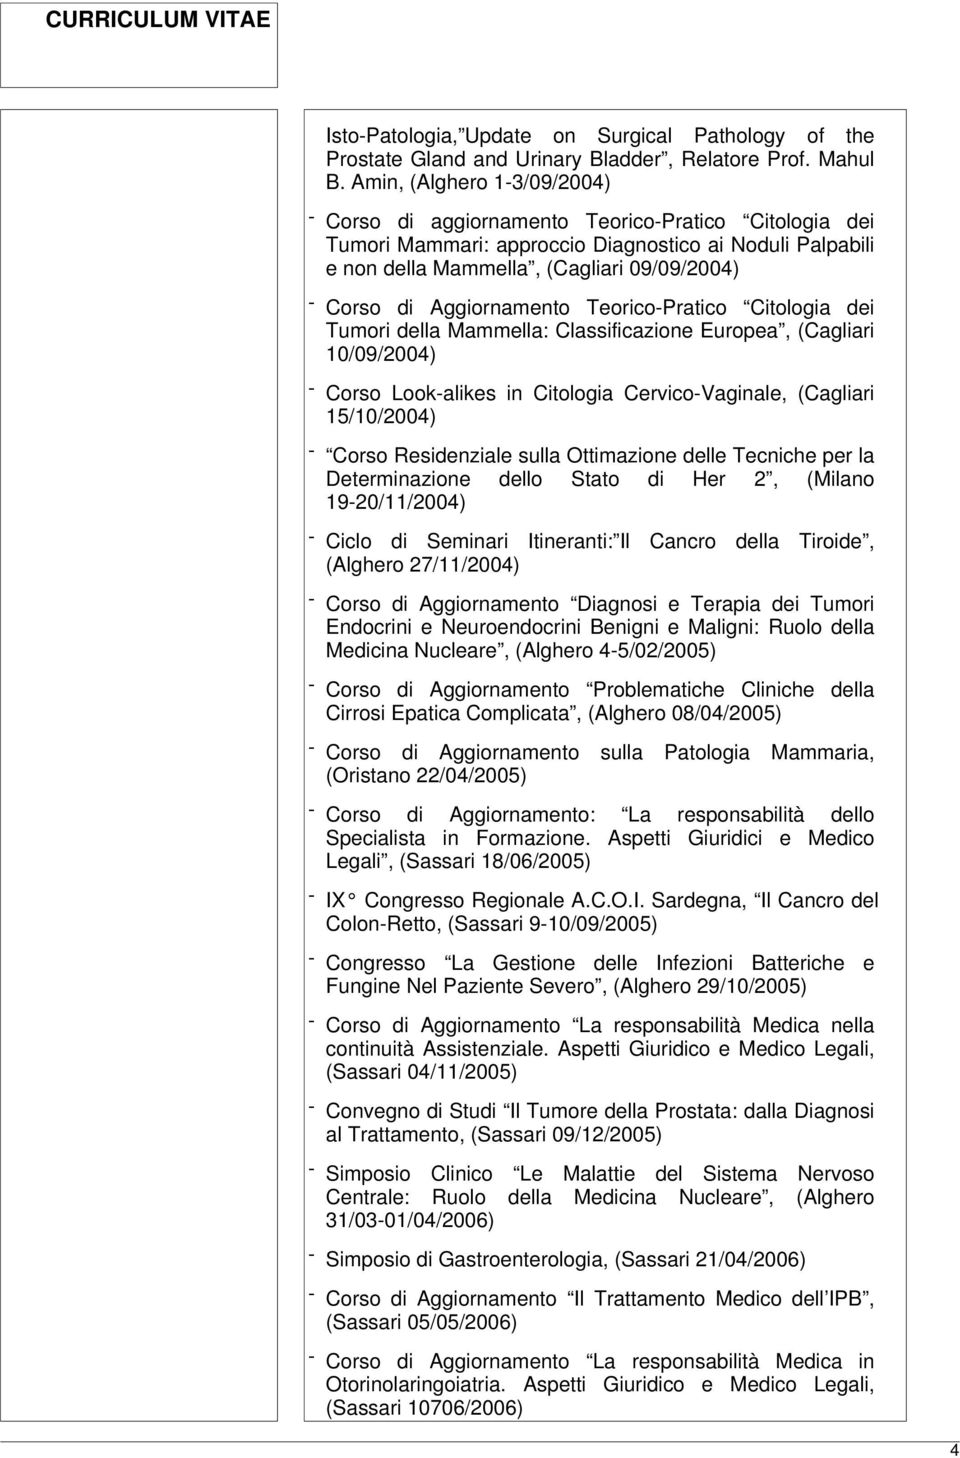 Aggiornamento Teorico-Pratico Citologia dei Tumori della Mammella: Classificazione Europea, (Cagliari 10/09/2004) - Corso Look-alikes in Citologia Cervico-Vaginale, (Cagliari 15/10/2004) - Corso